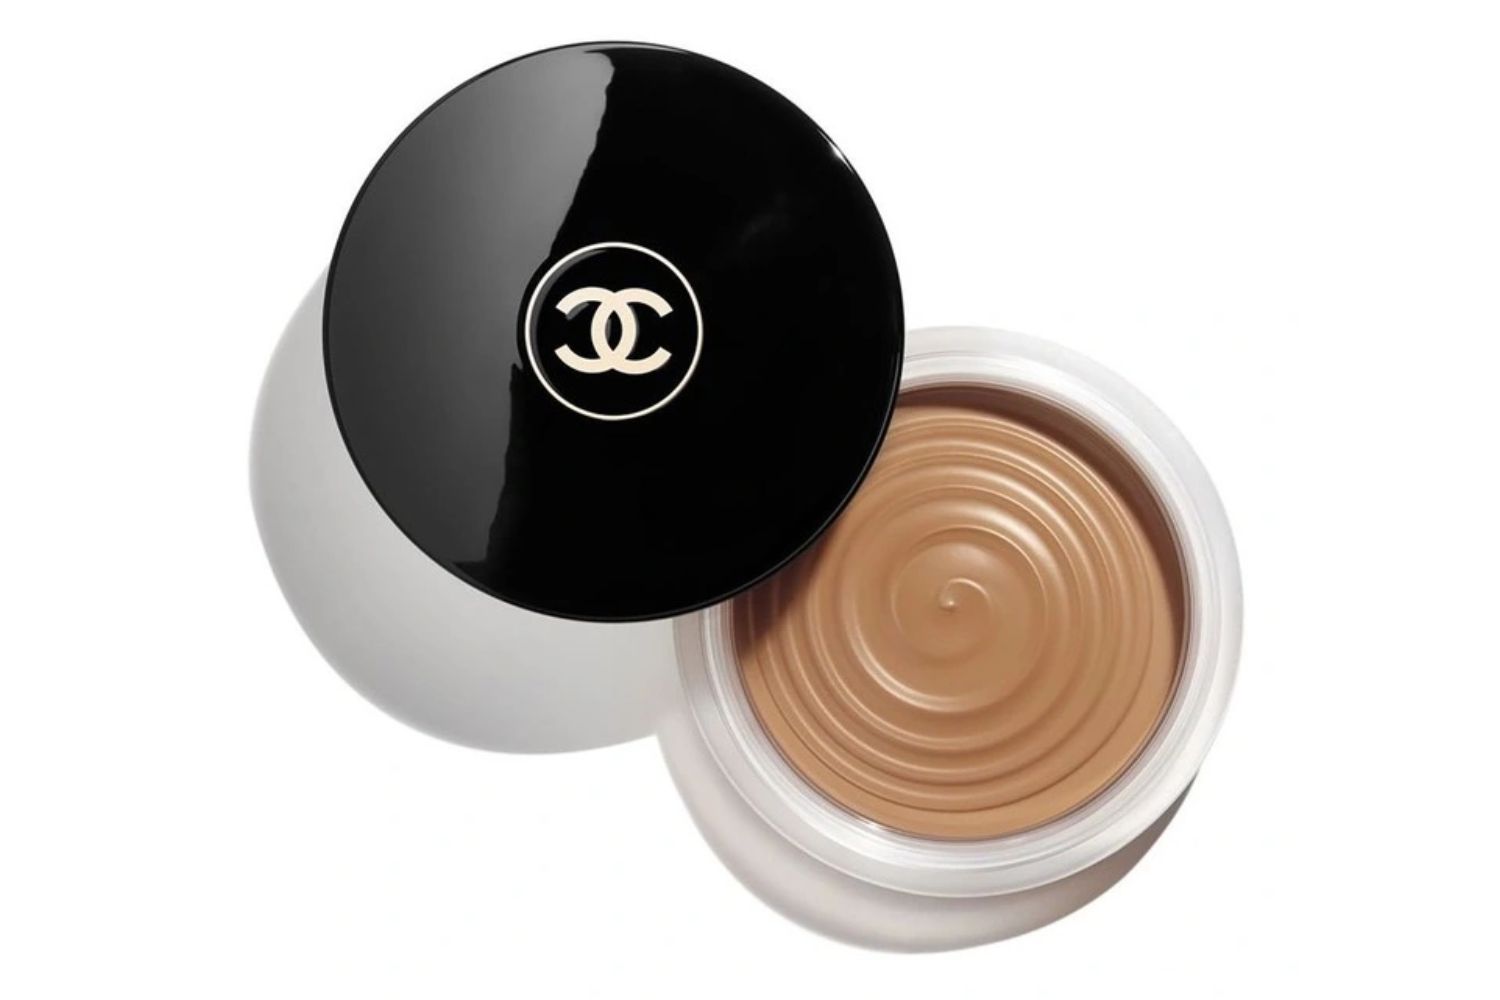 Chanel Healthy Glow Bronzing Cream in Bronze